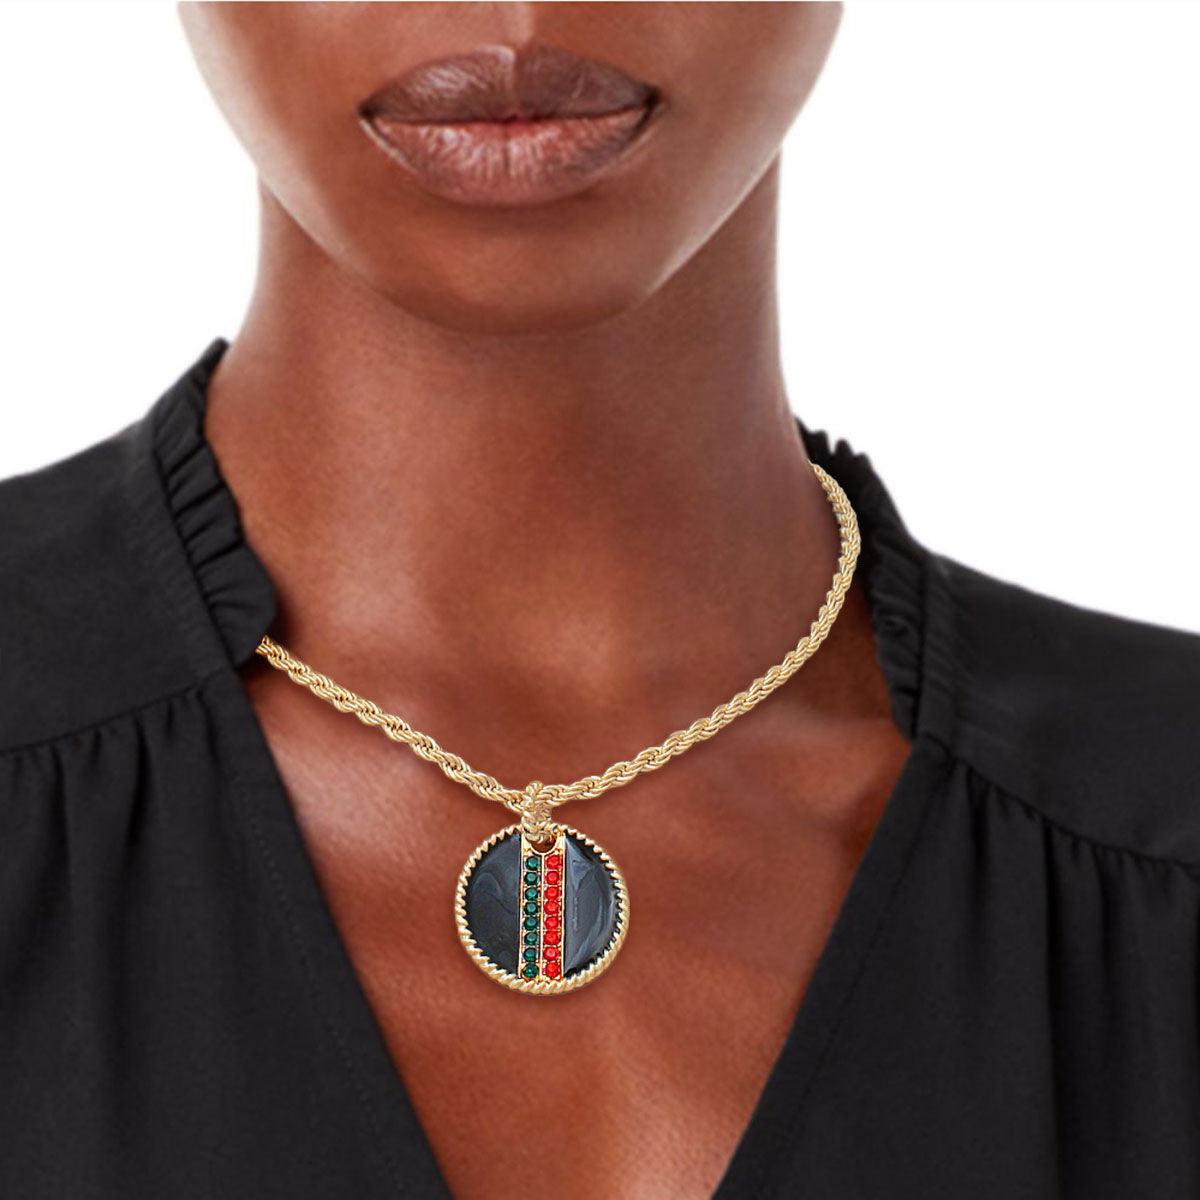 Rhinestone Embellished Fashion Necklace: Gold and Black Medallion